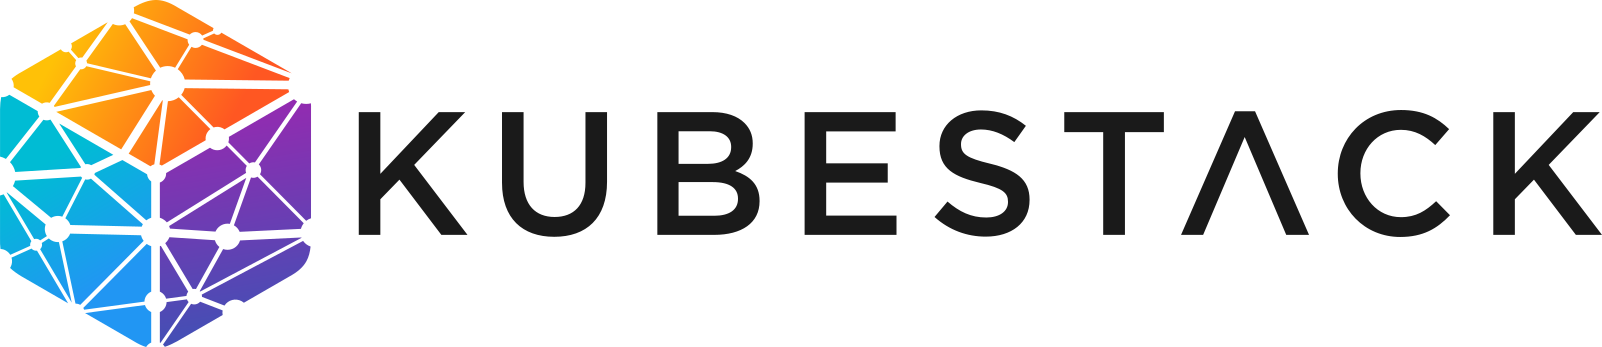 kubestack-logo.png